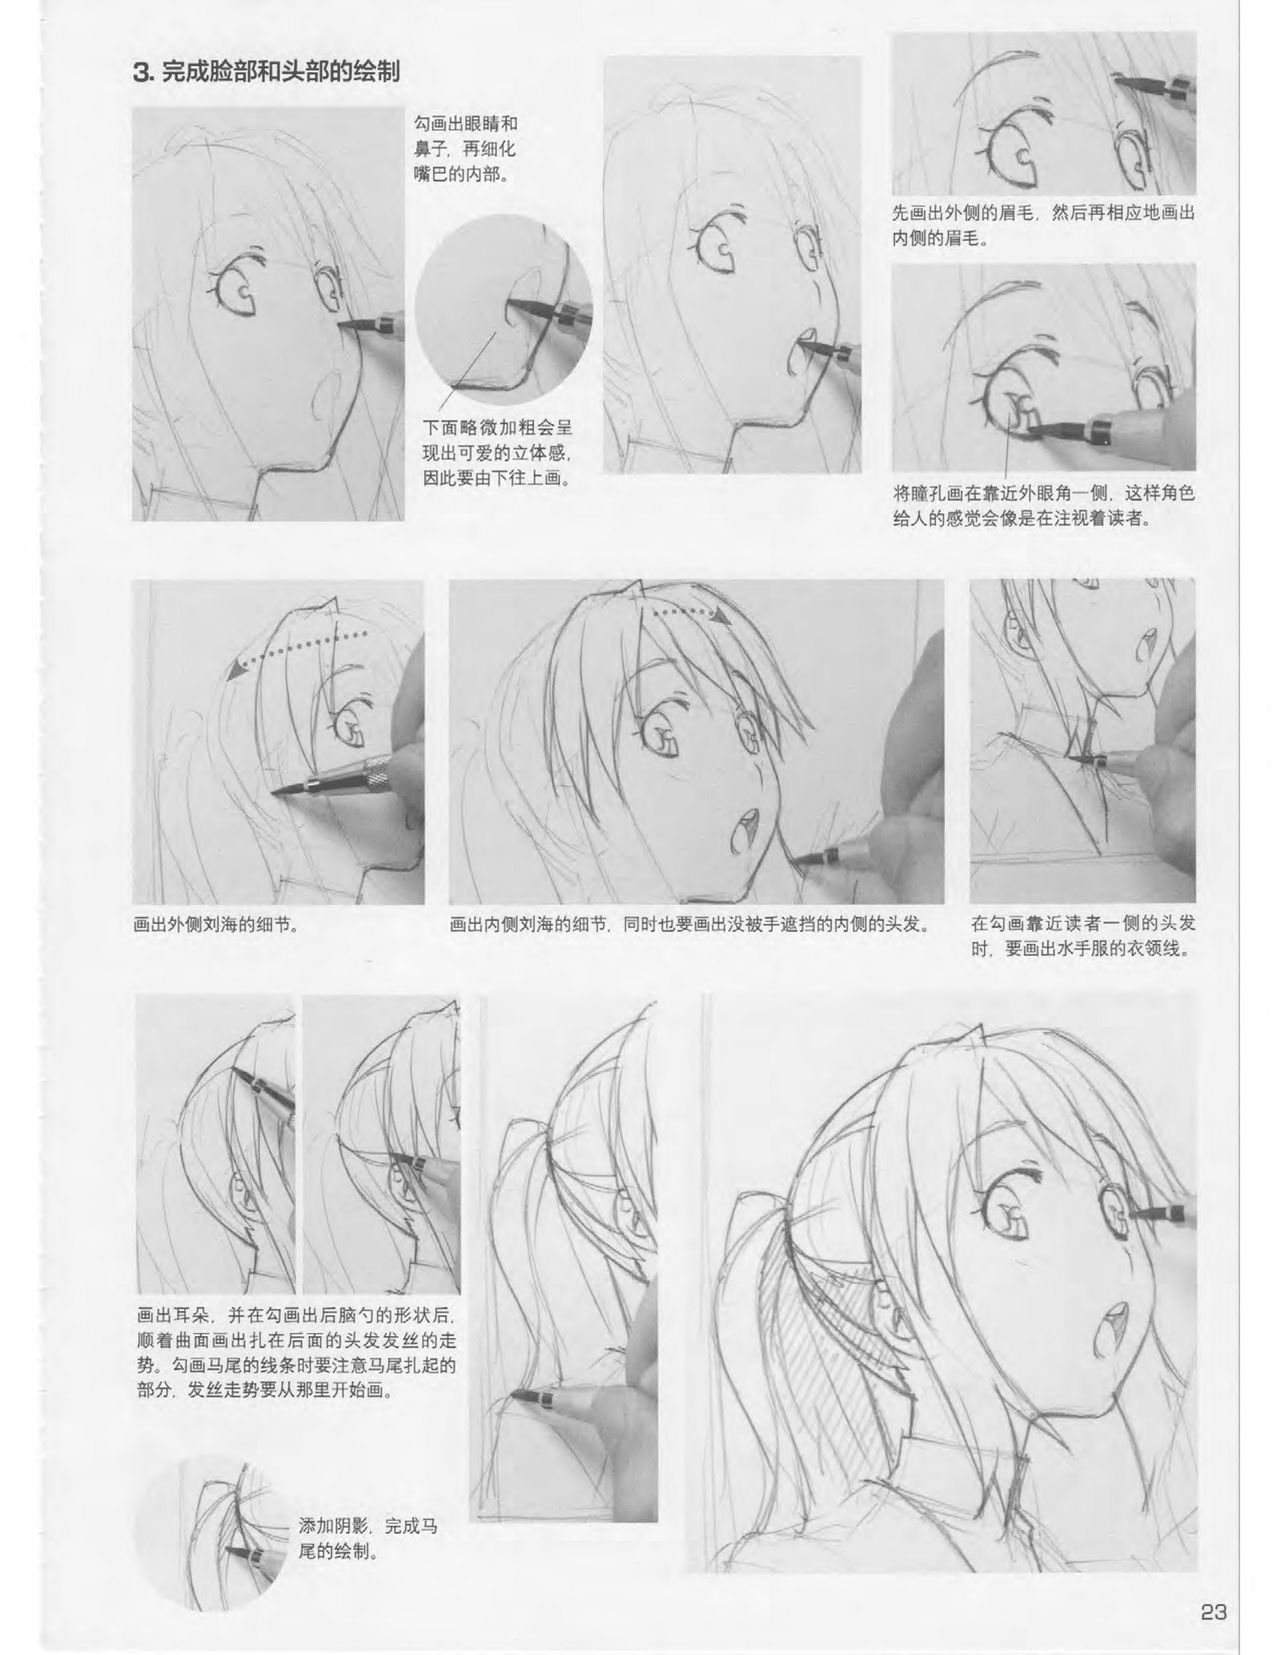 Japanese Manga Master Lecture 3: Lin Akira and Kakumaru Maru Talk About Glamorous Character Modeling 23